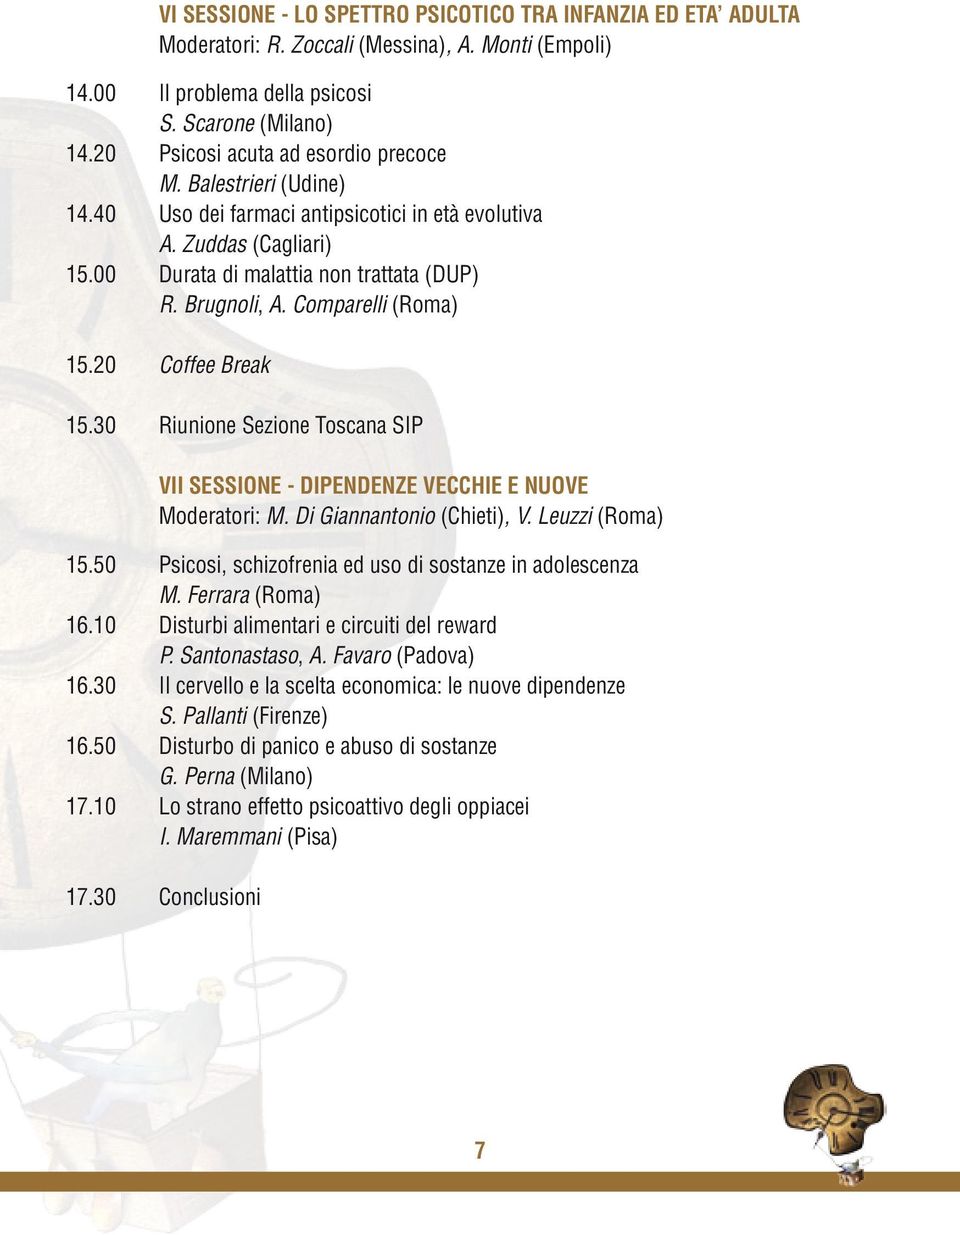 Comparelli (Roma) 15.20 Coffee Break 15.30 Riunione Sezione Toscana SIP VII SESSIONE - DIPENDENZE VECCHIE E NUOVE Moderatori: M. Di Giannantonio (Chieti), V. Leuzzi (Roma) 15.